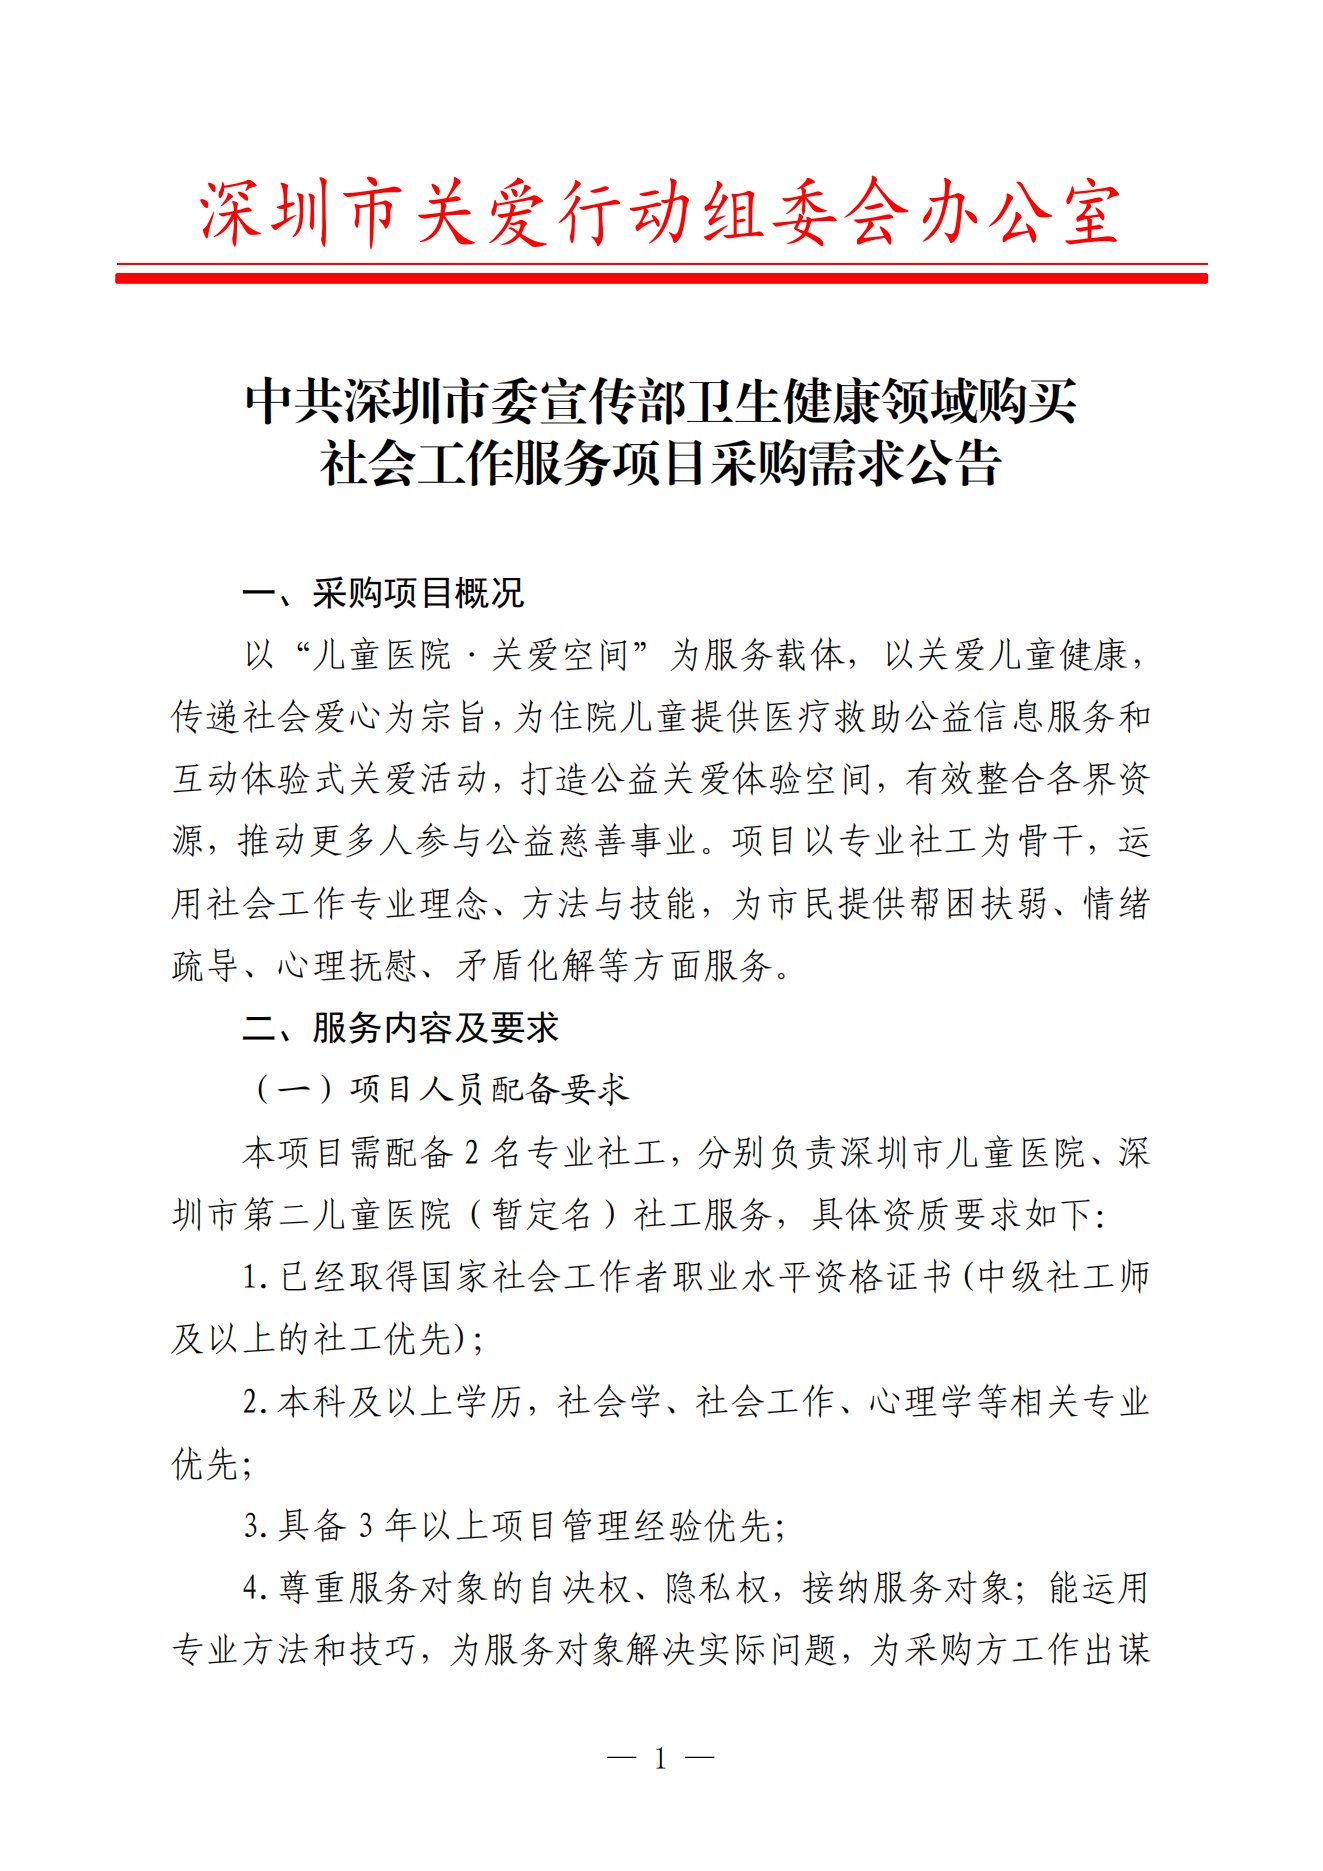 中共深圳市委宣传部卫生健康领域购买社会工作服务项目采购需求公告_00(1).png